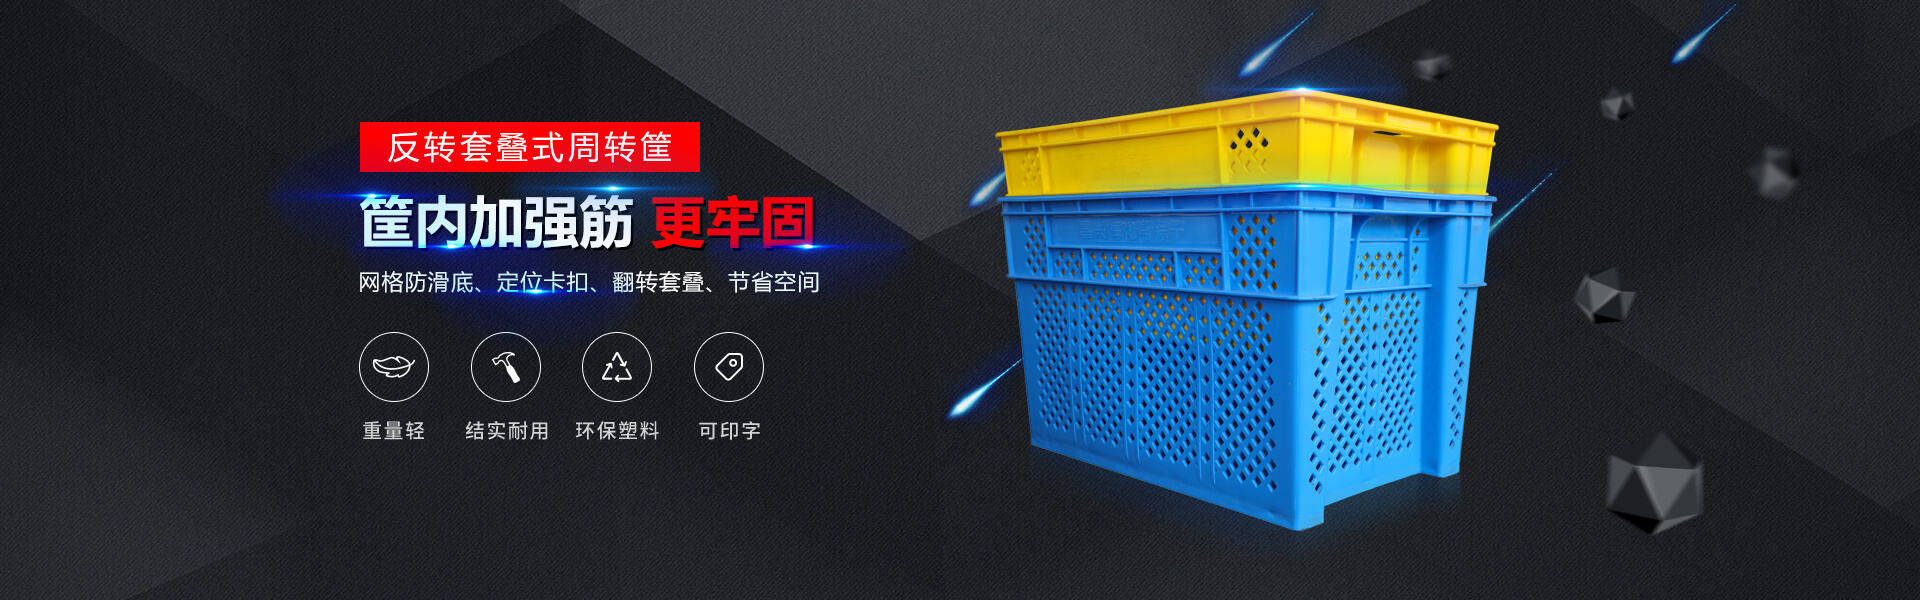 青岛尊龙凯时 - 人生就是搏!自动化主营零件盒,塑料零件盒,塑料托盘等产品!